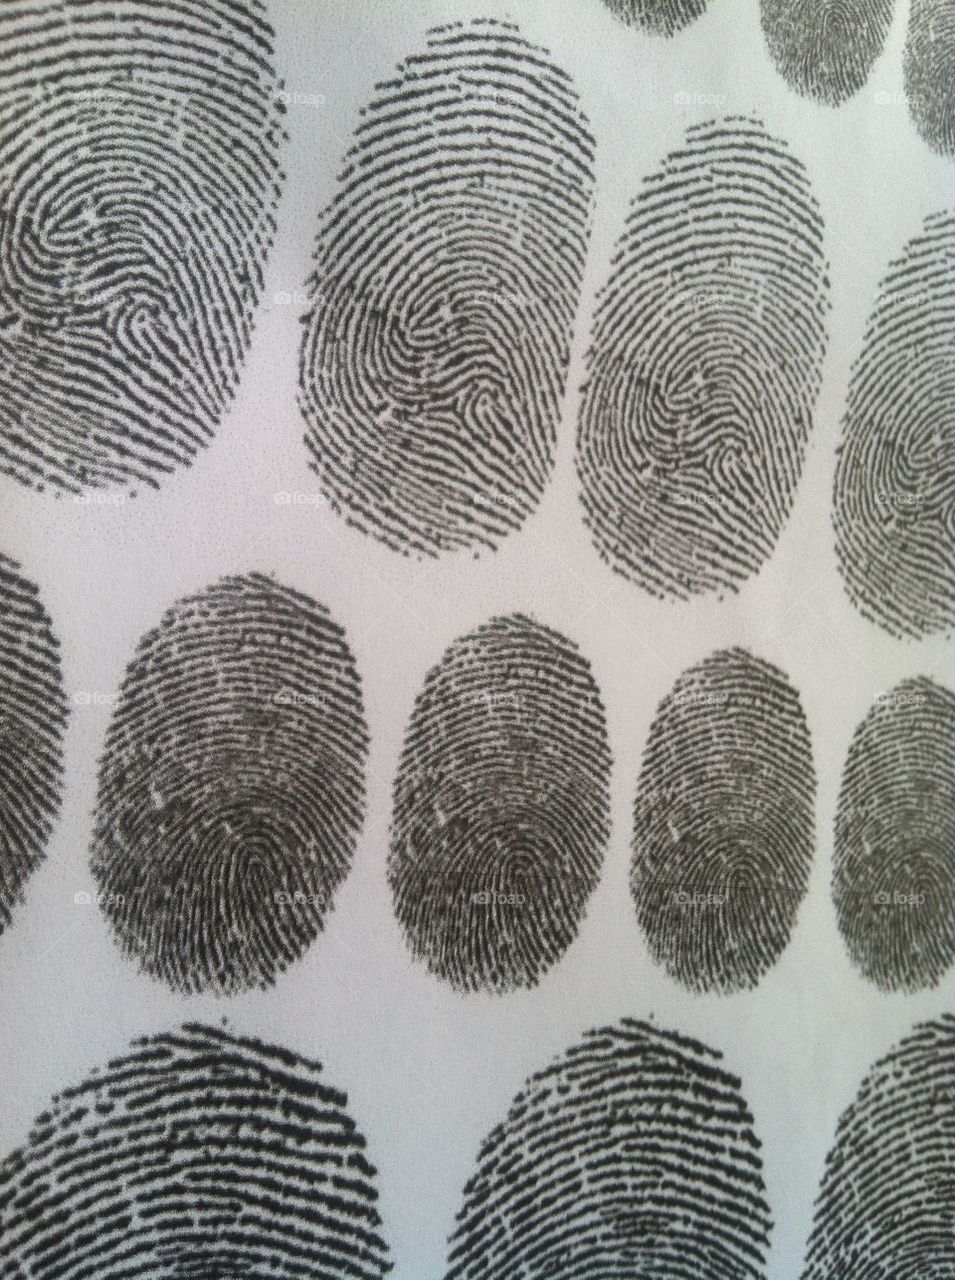 Finger prints 